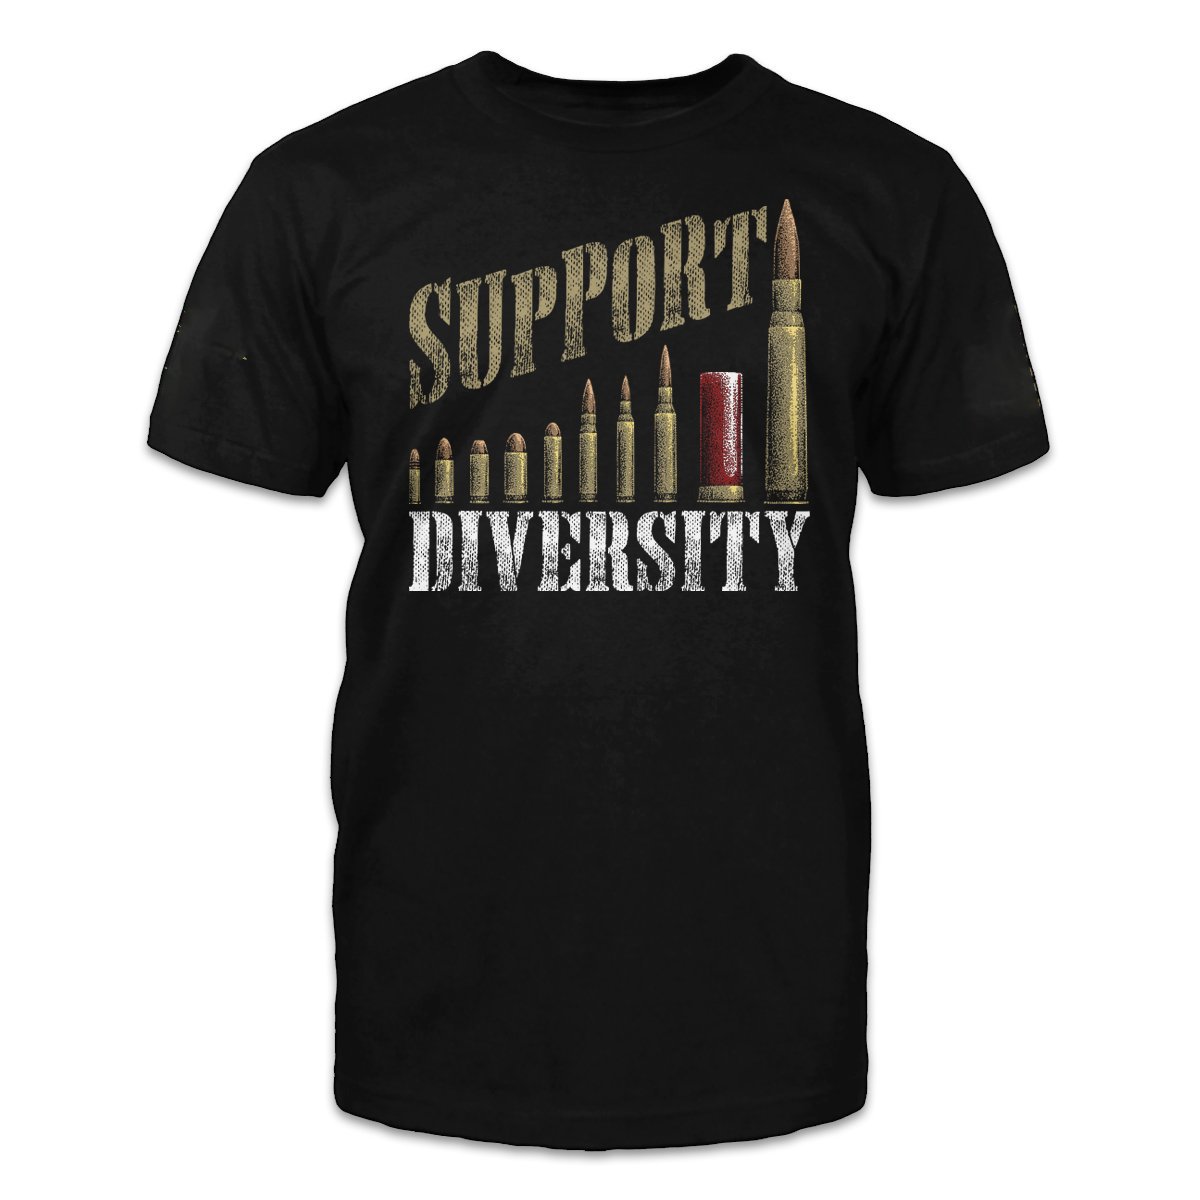 Veteran Shirt, Support Diversity T-Shirt KM1008